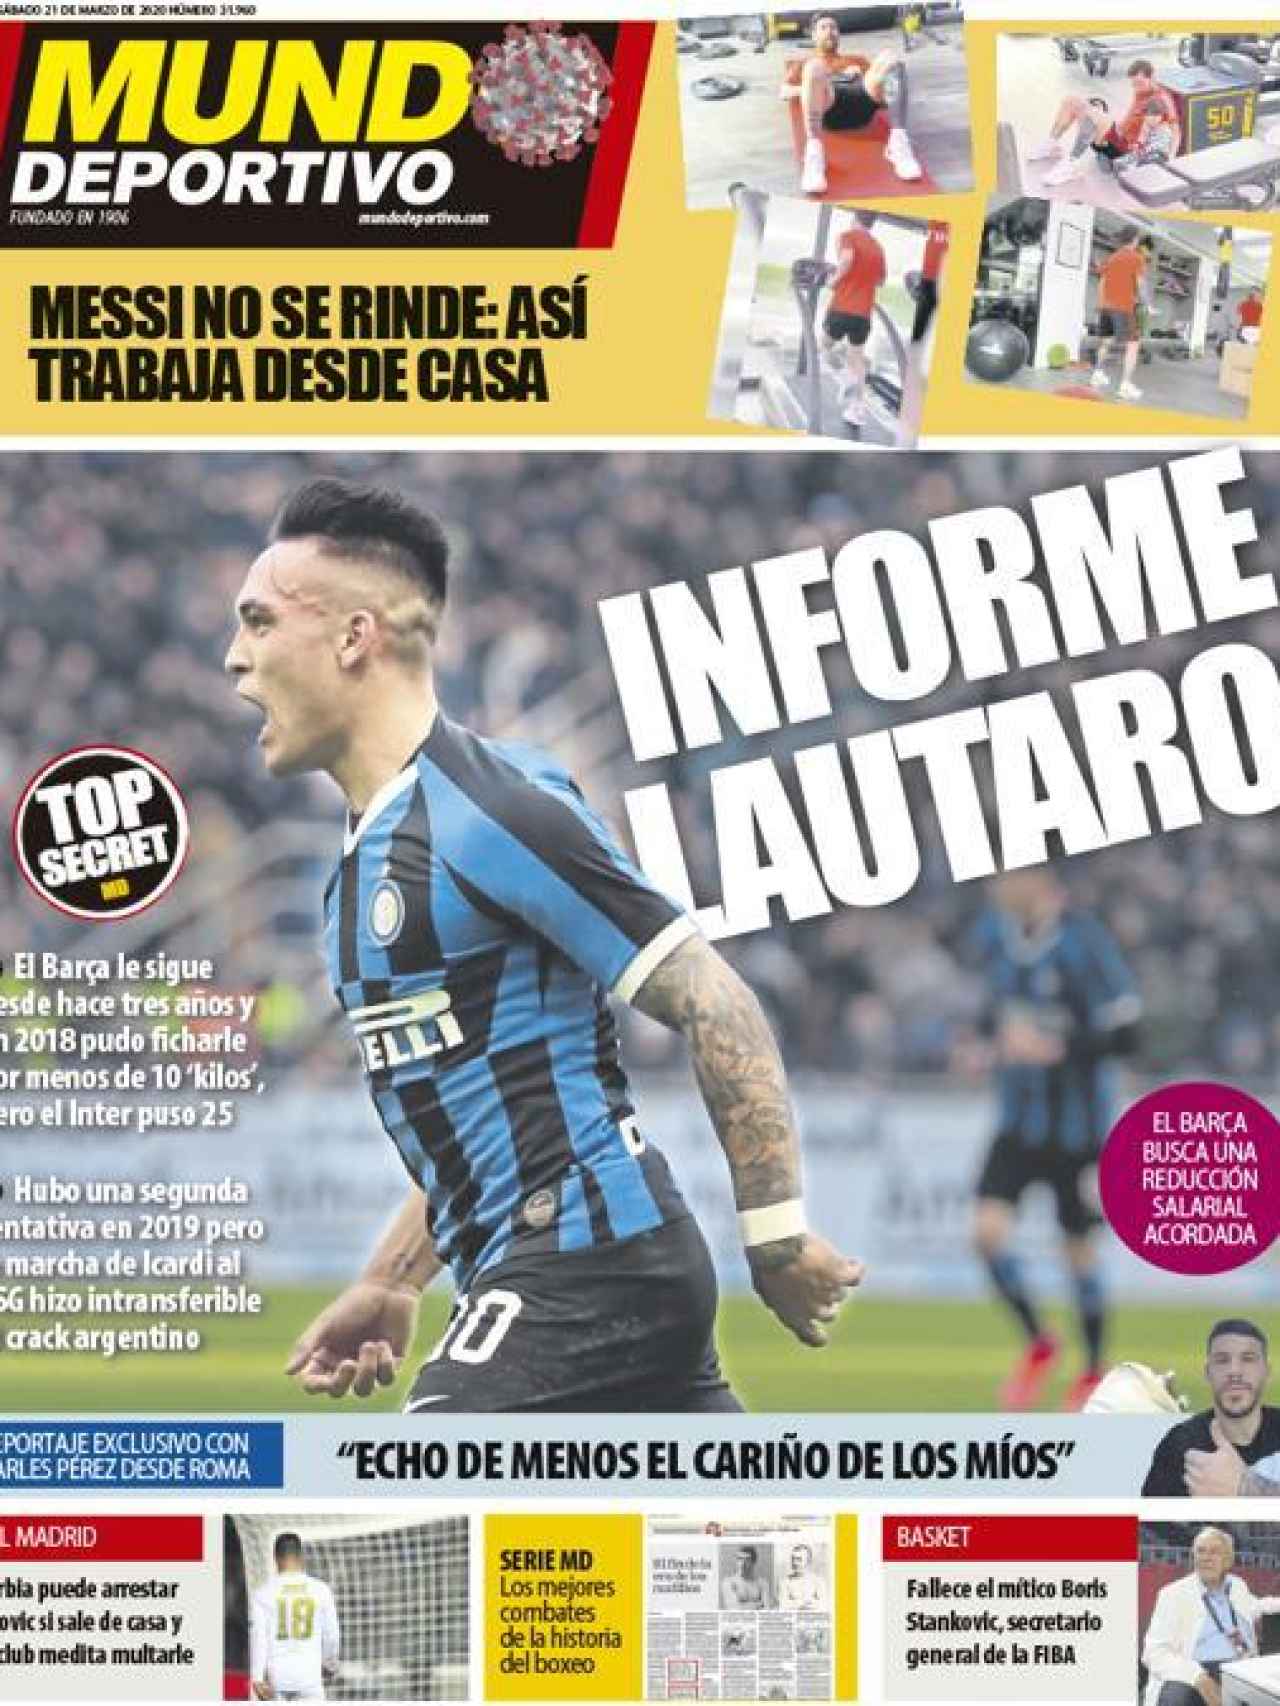 La portada del diario Mundo Deportivo (21/03/2020)